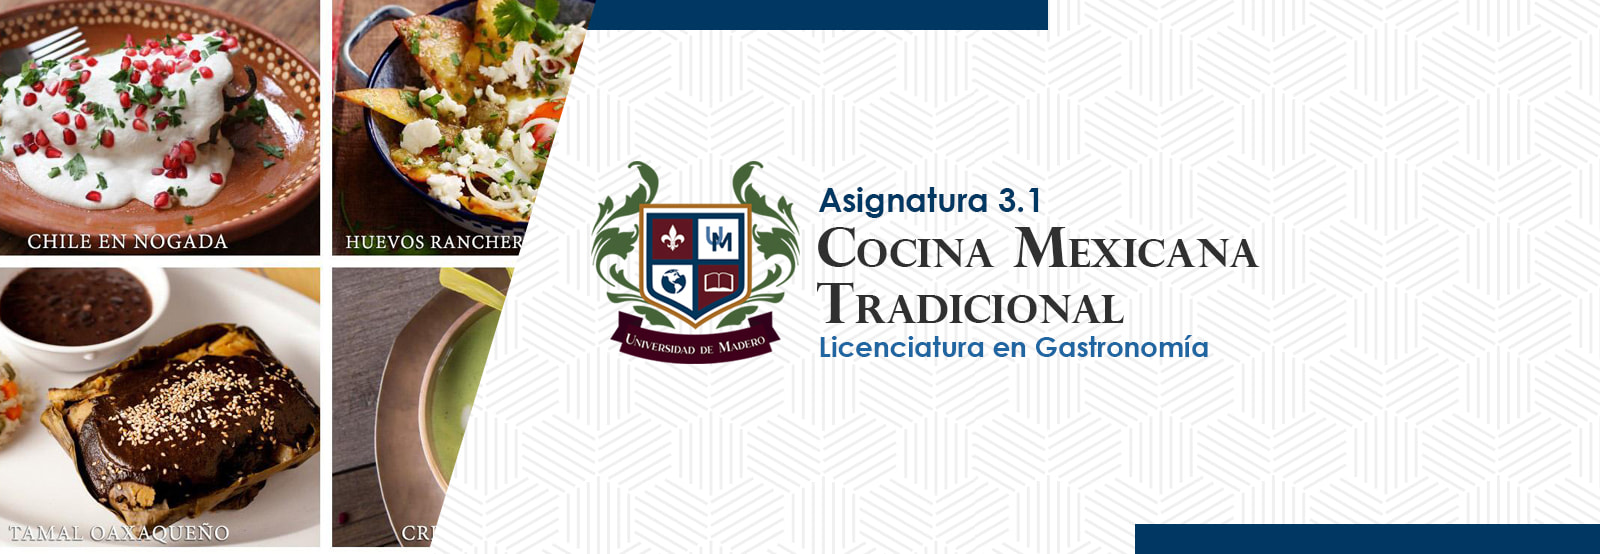 LG0301 Cocina Mexicana Tradicional